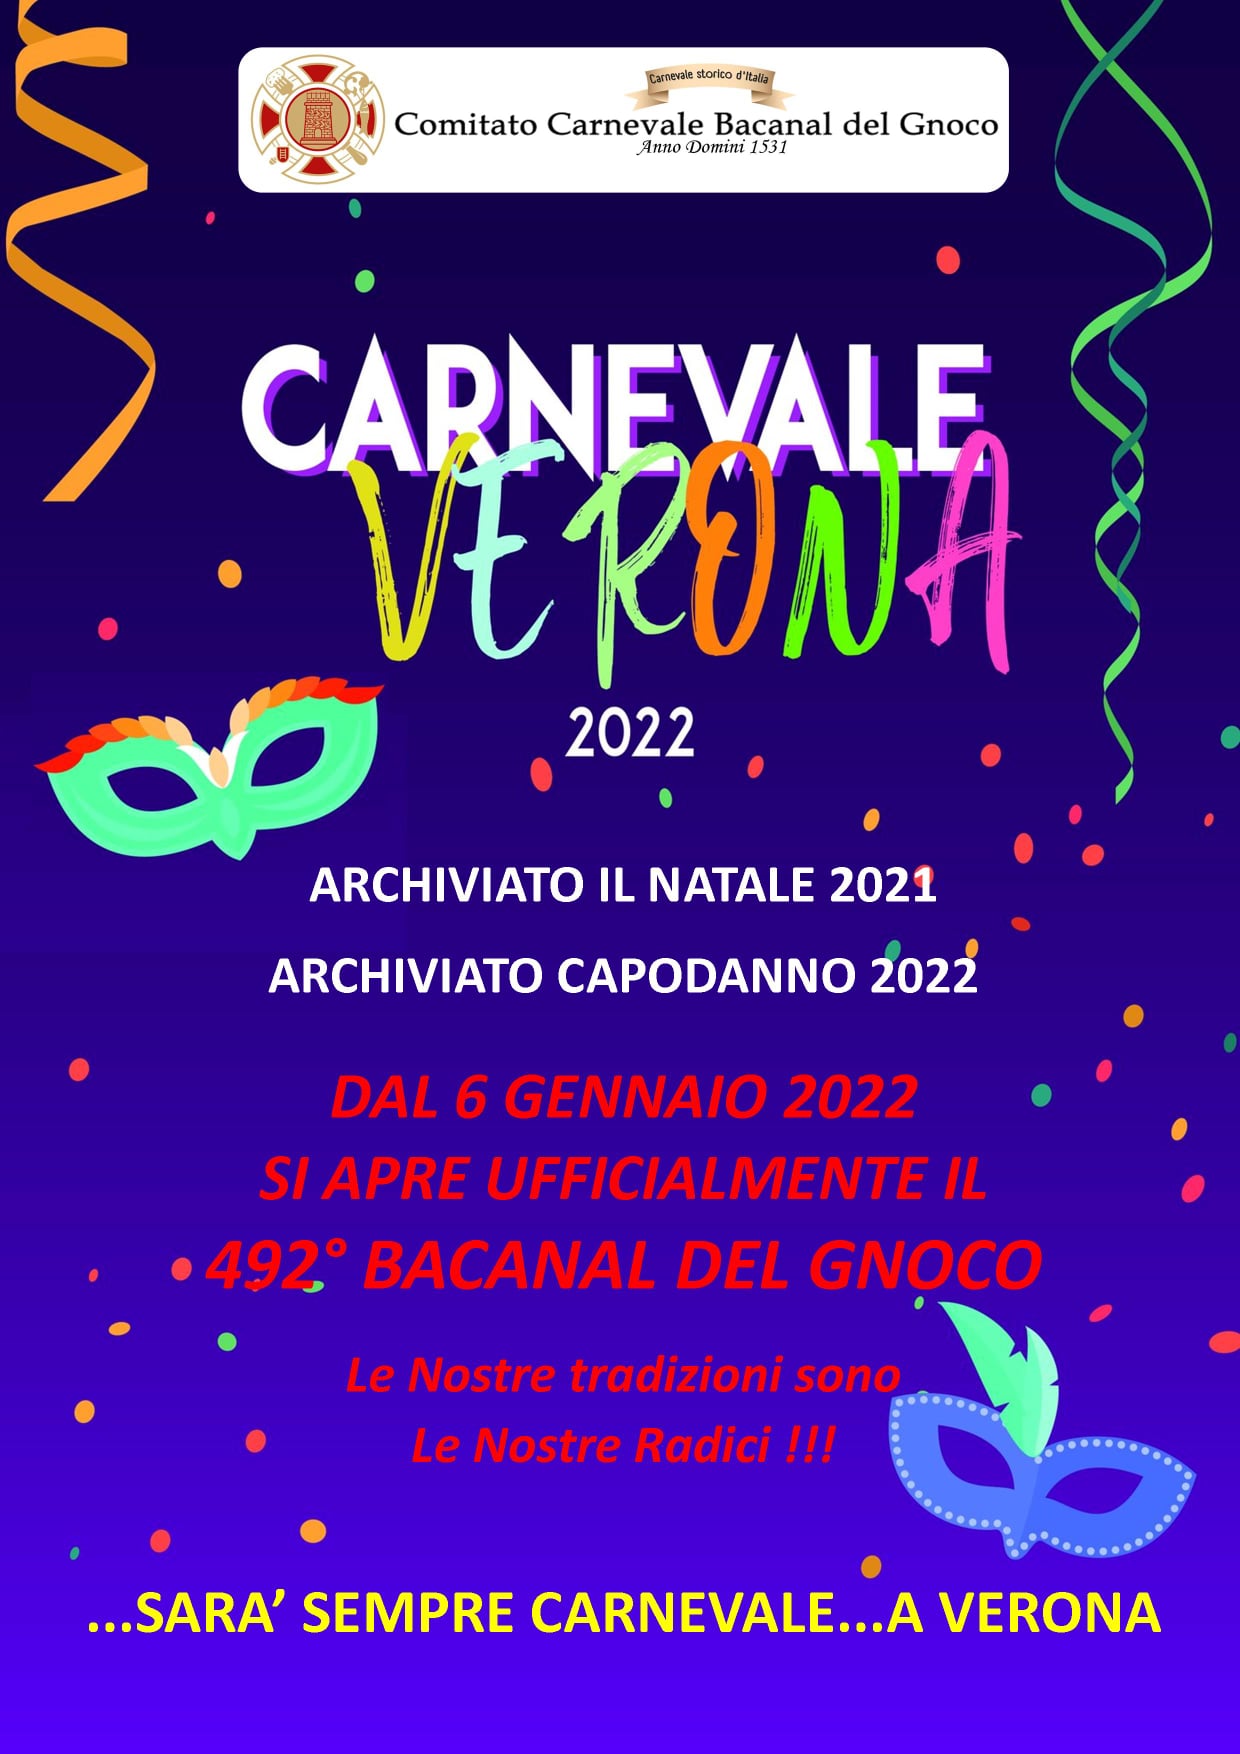 Si Apre Ufficialmente il Carnevale 2022 Carnevale 2024 Verona